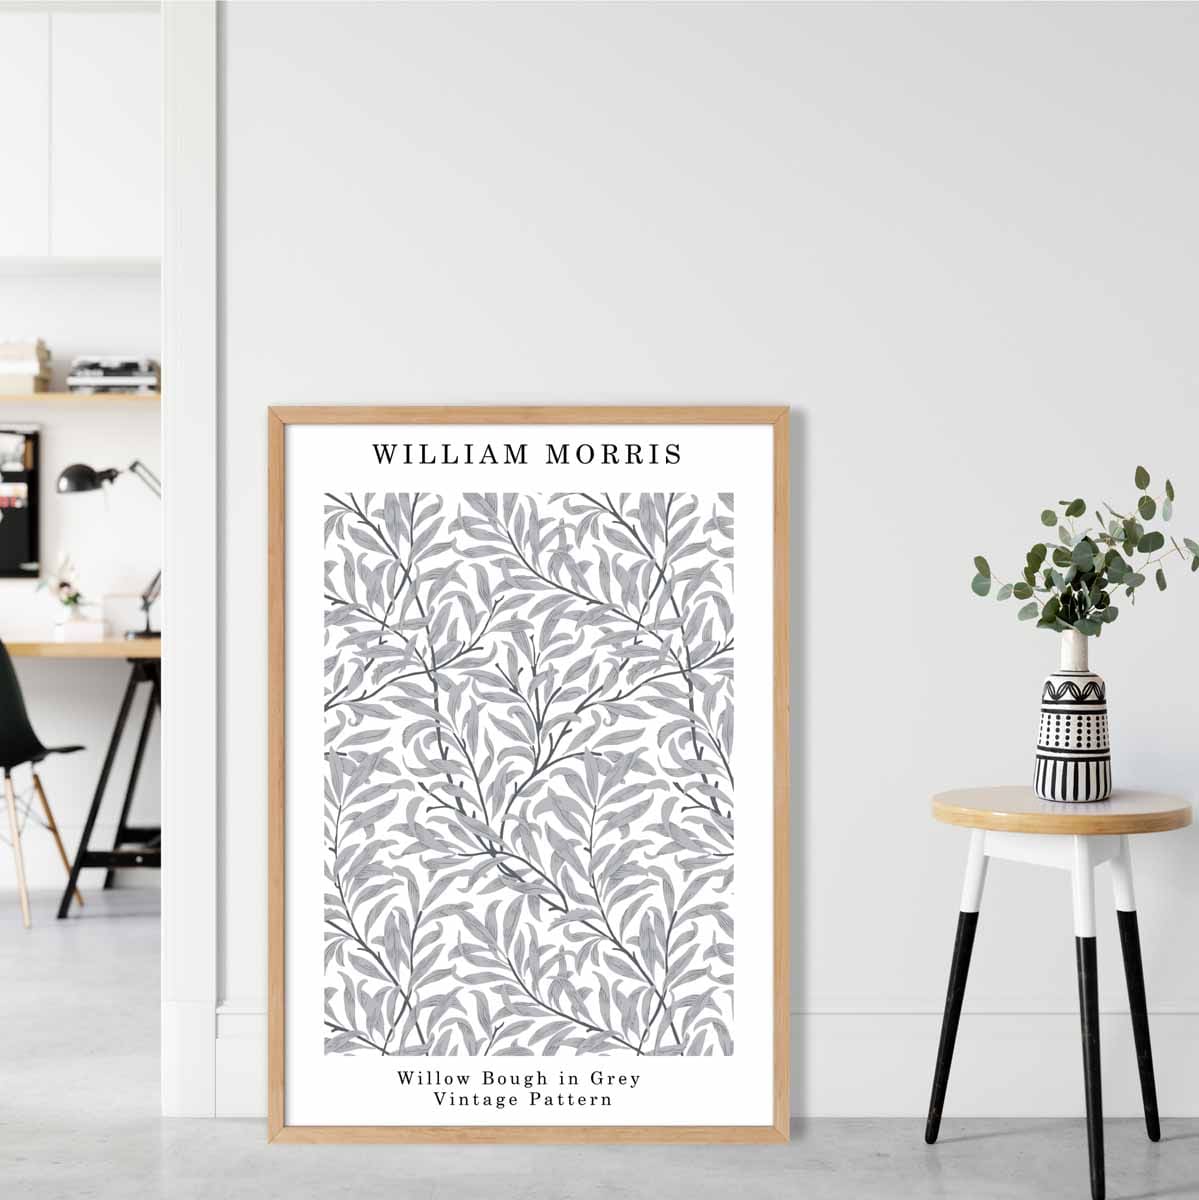 William Morris Grey Willow Bough Art Print